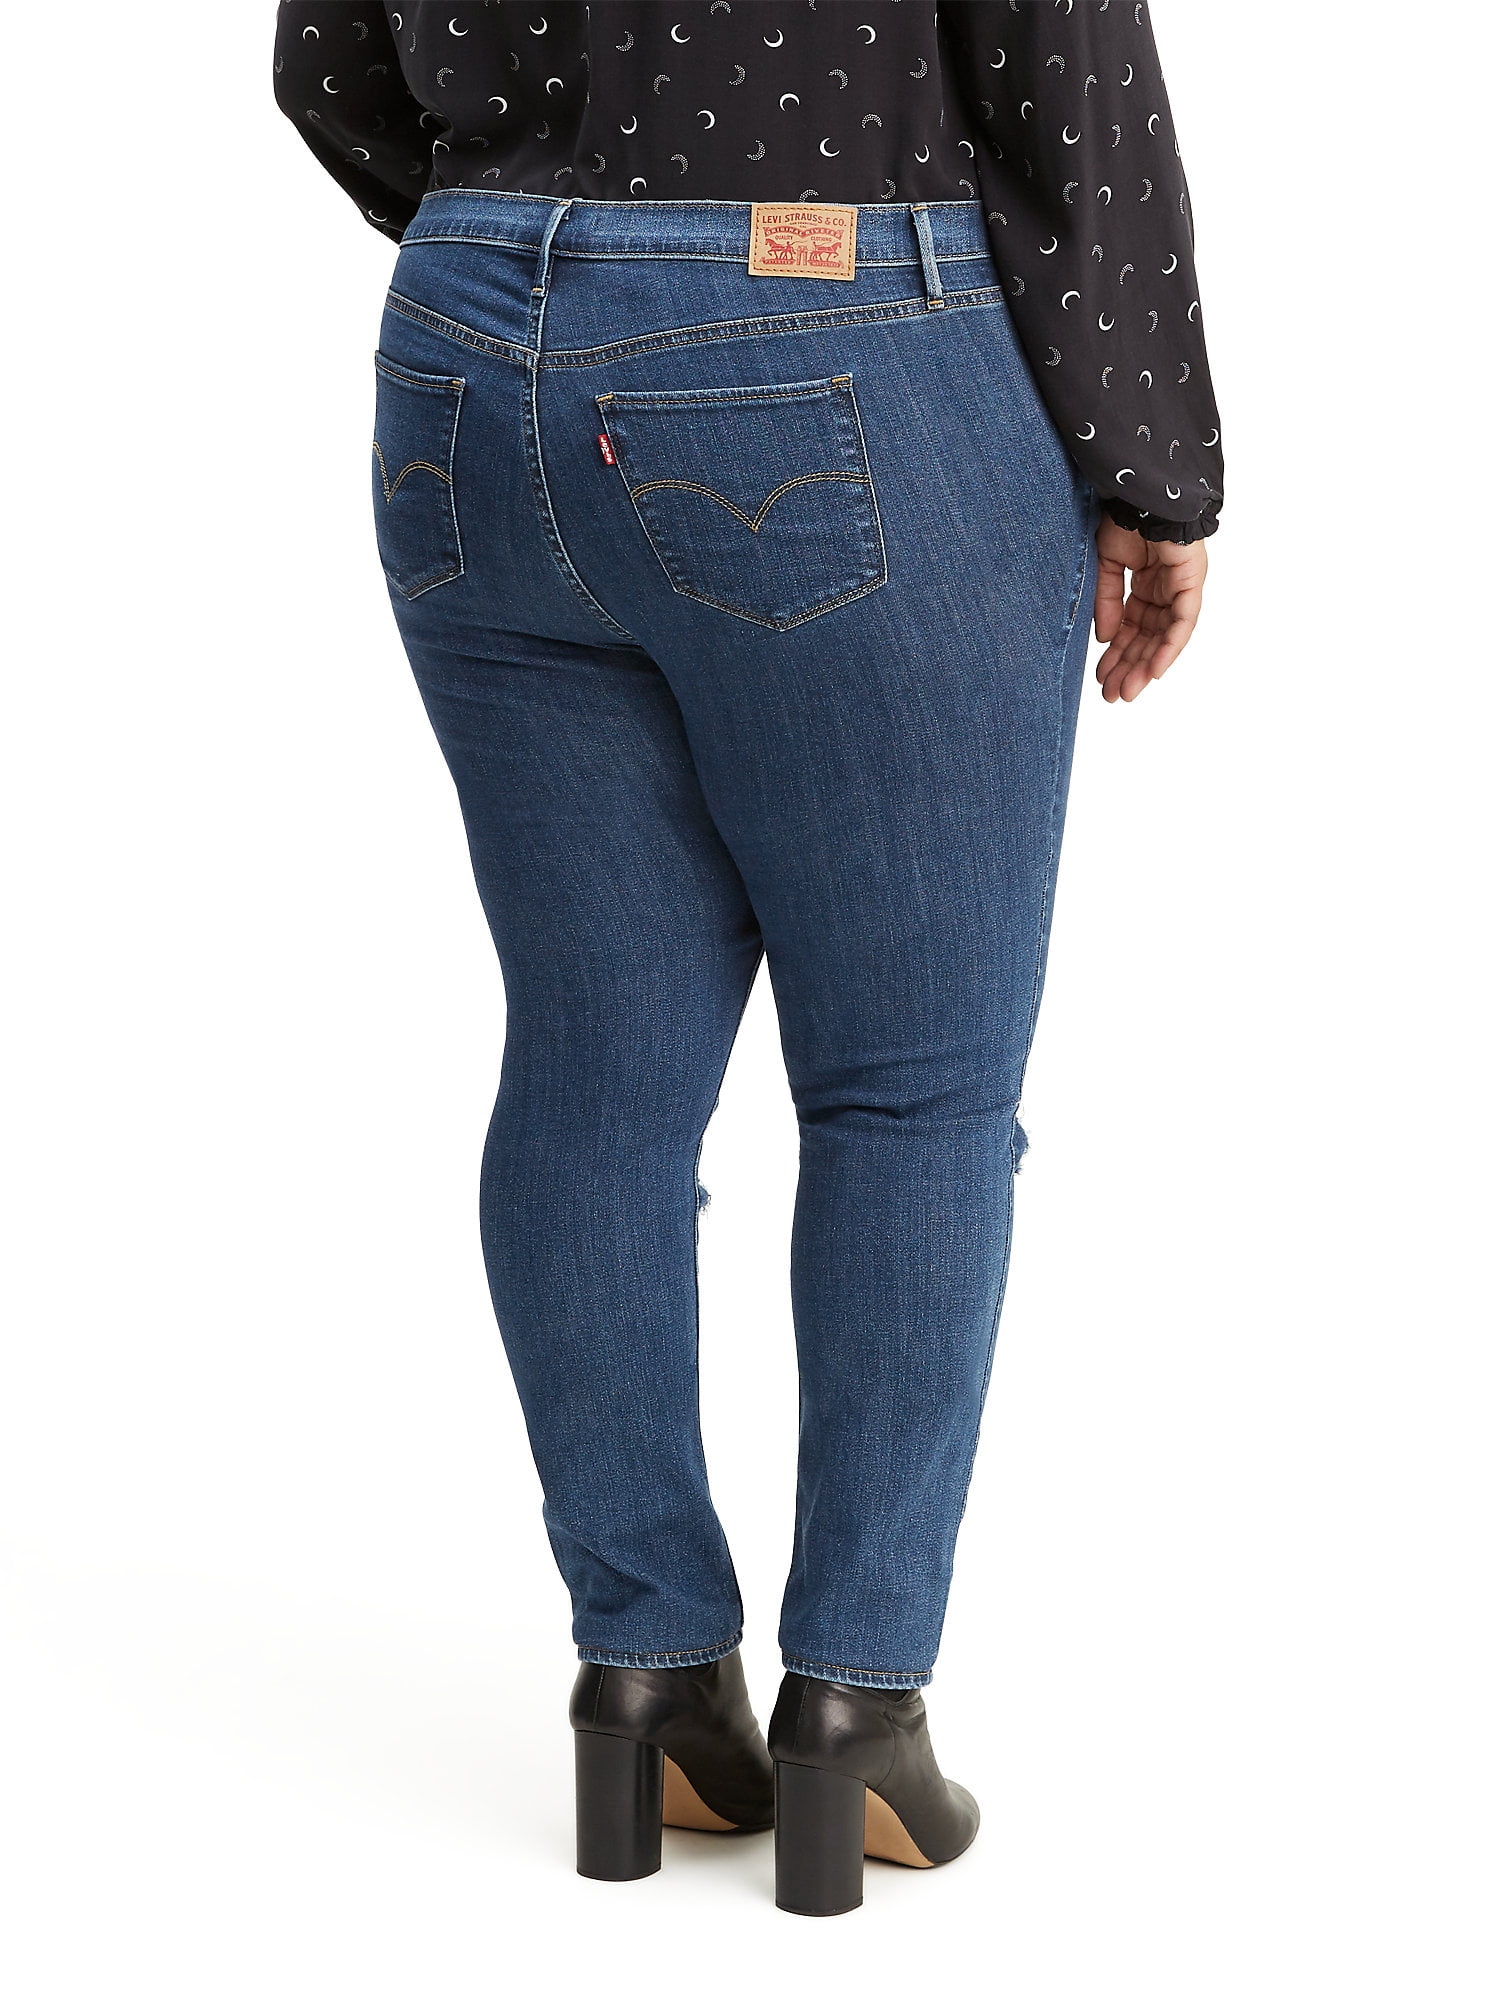 levi's 505 women's plus size jeans